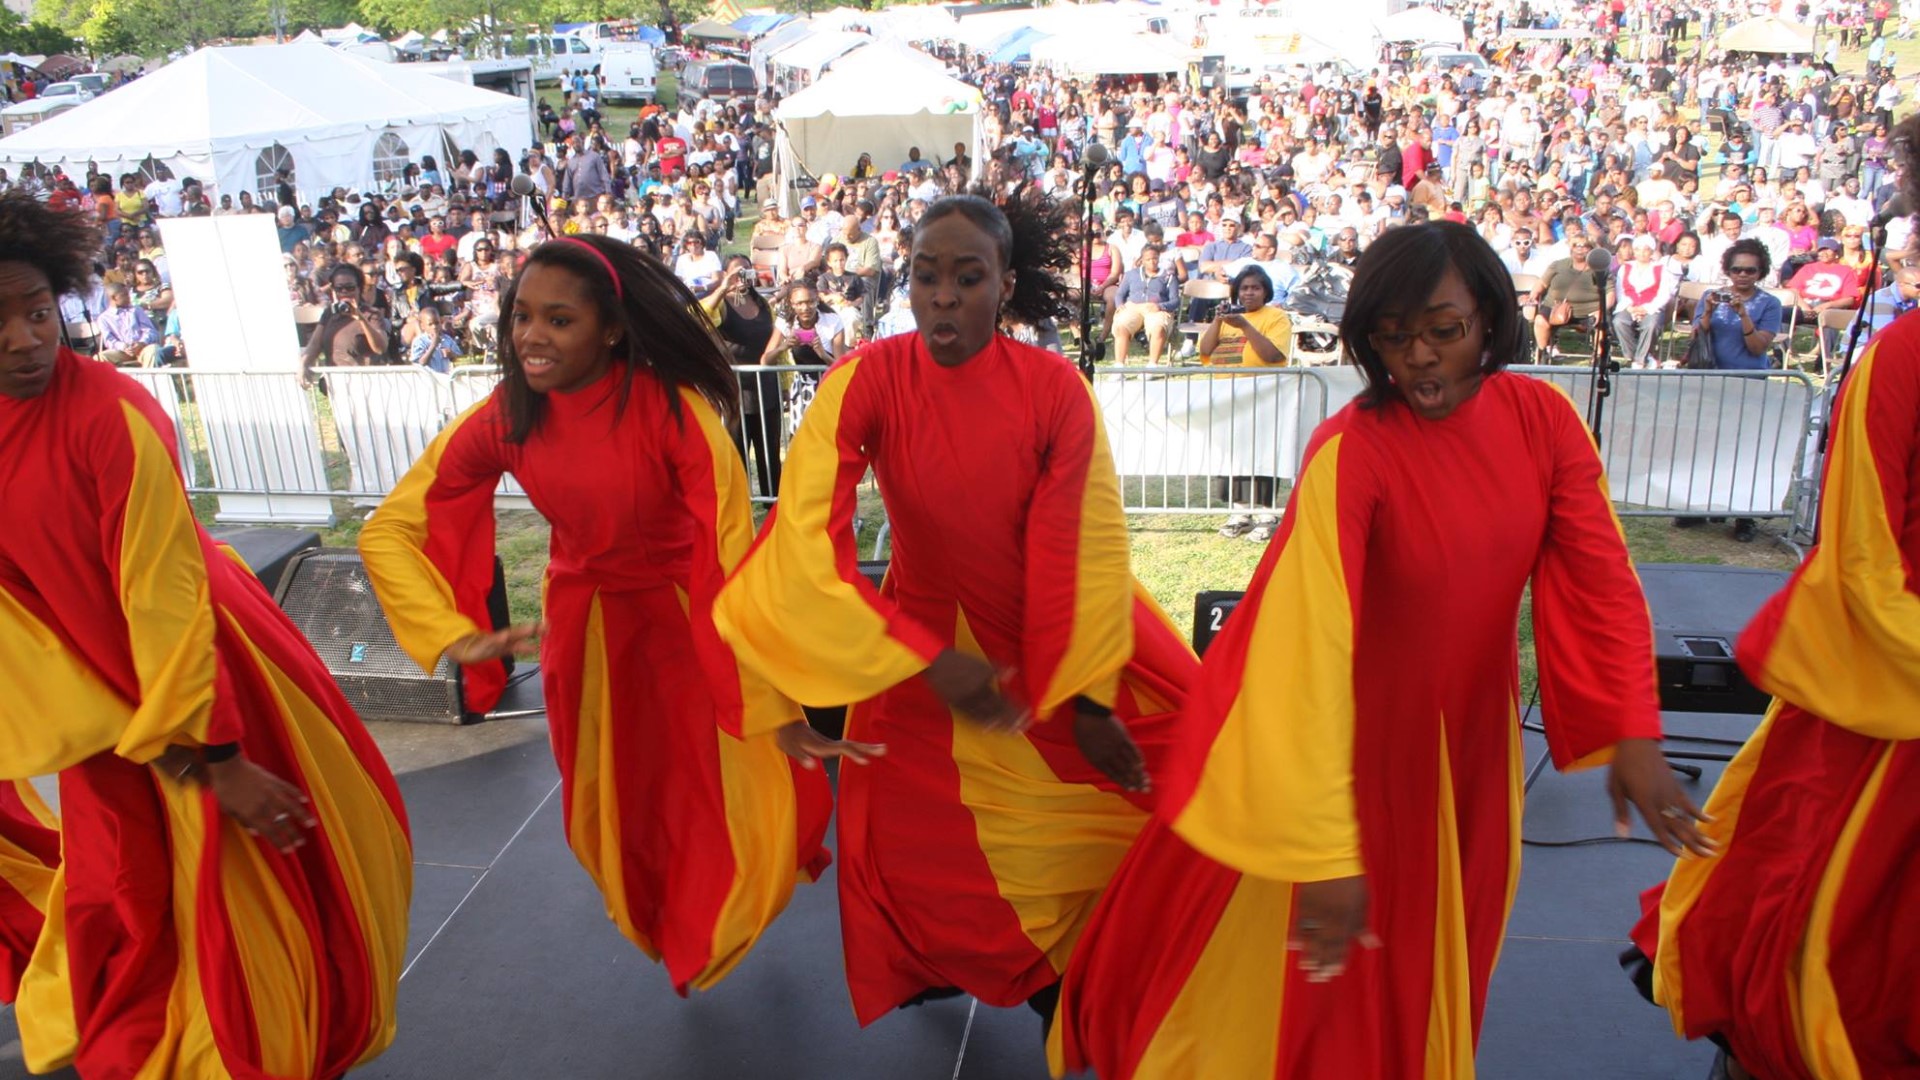 Memphis Africa in April festival brings cultural awareness to Rwanda